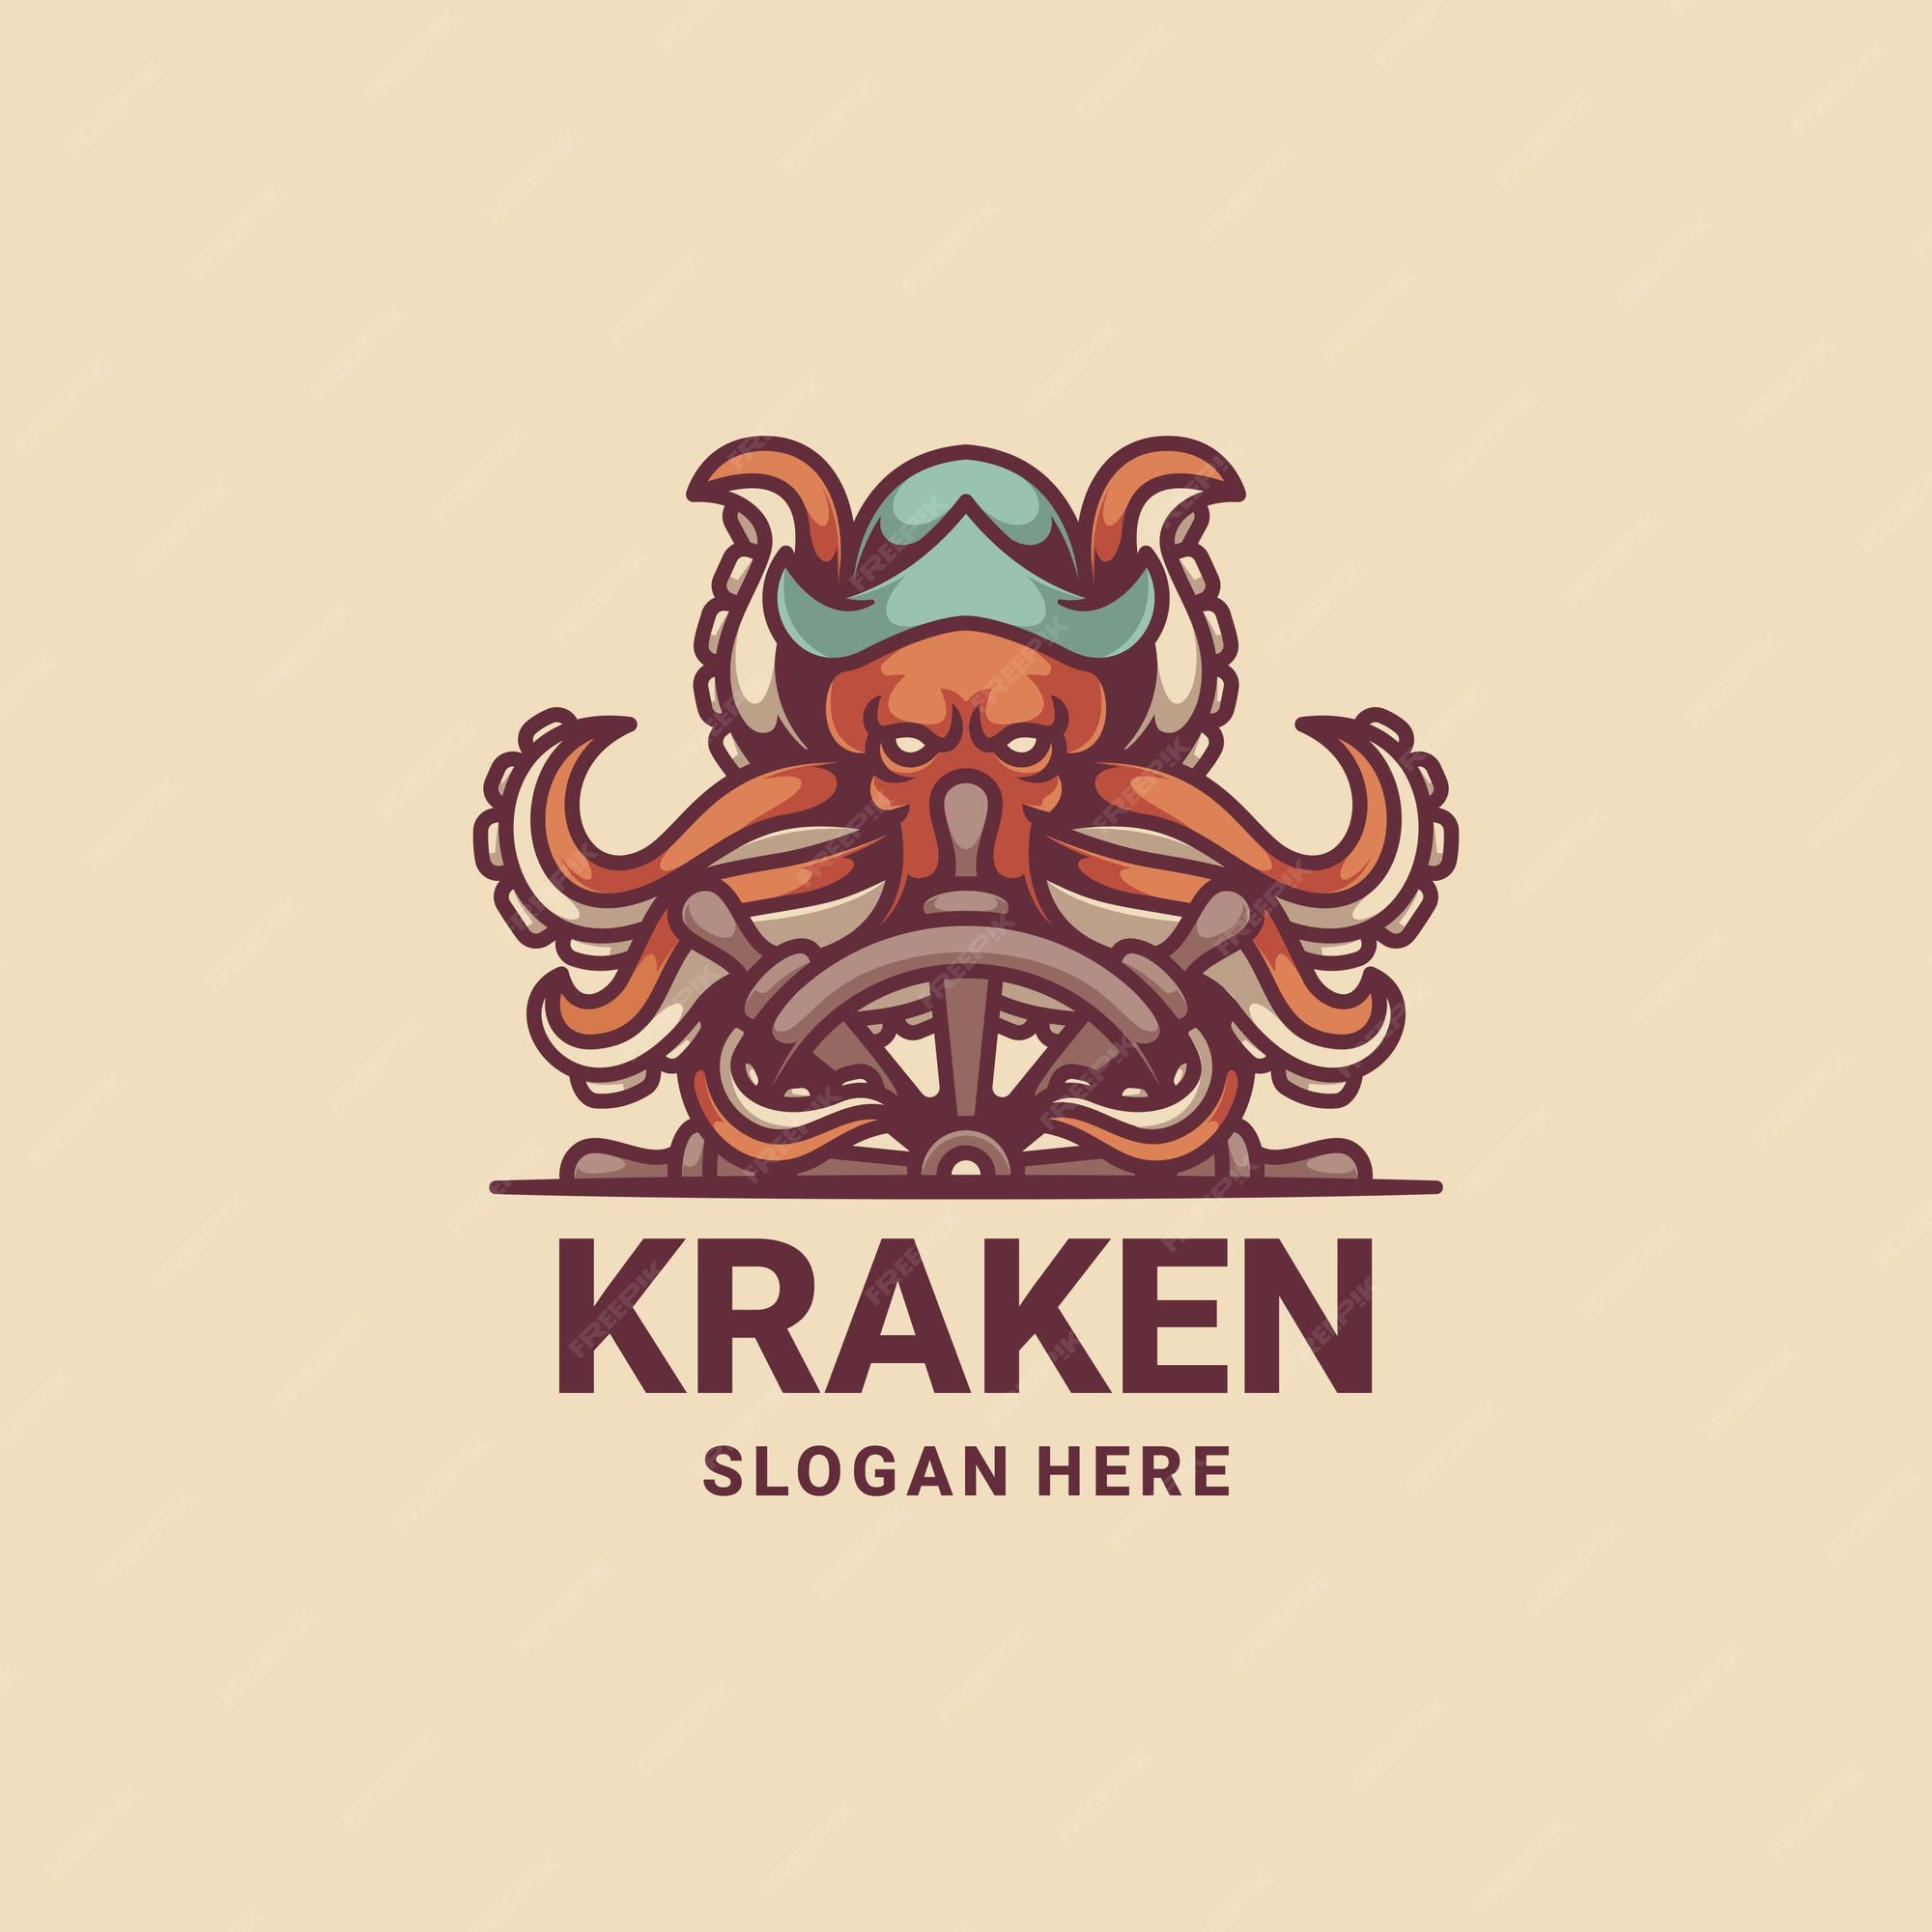 Логотип кракен маркетплейс. Kraken логотип. Кракен лого. Кракен вектор. Kraken логотип леска.